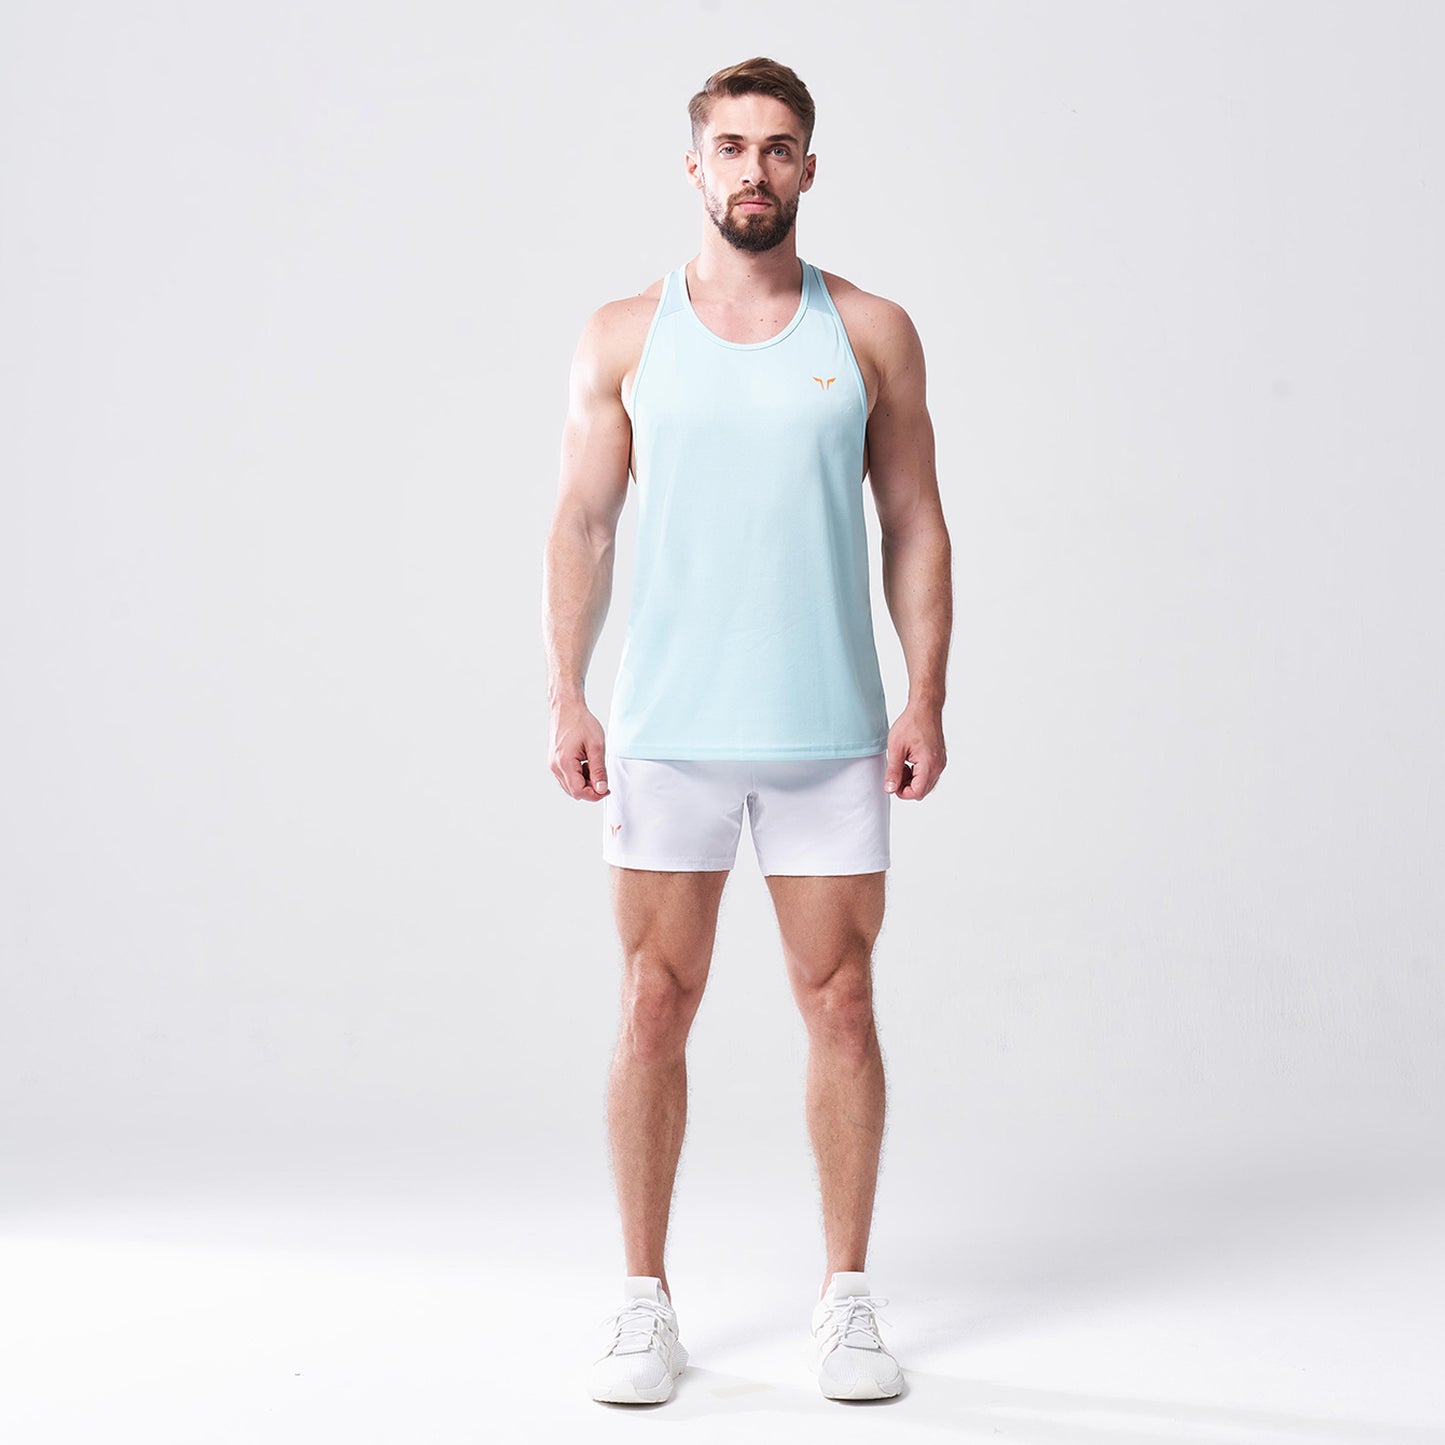 squatwolf-gym-wear-lab-360-weightless-stringer-blue-stringer-vests-for-men